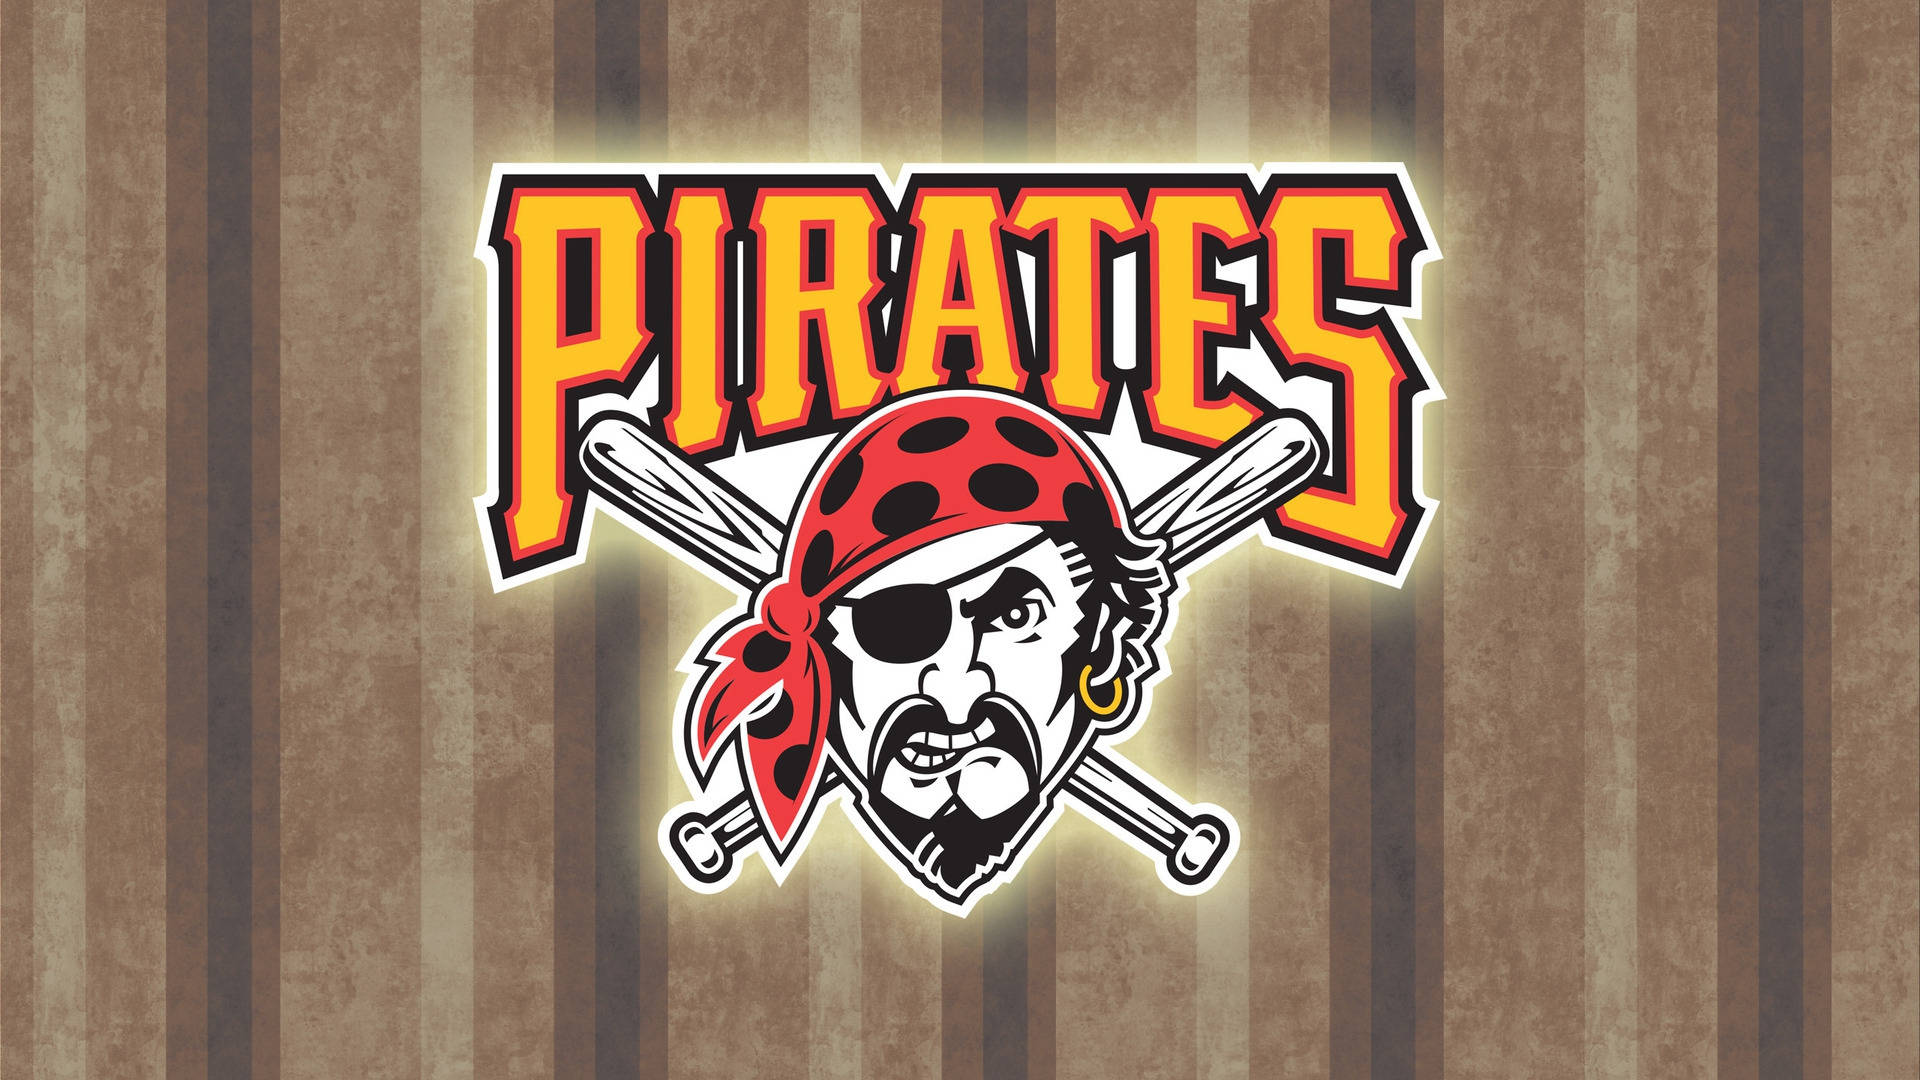 Grafikim Holzstil Der Pittsburgh Pirates Wallpaper